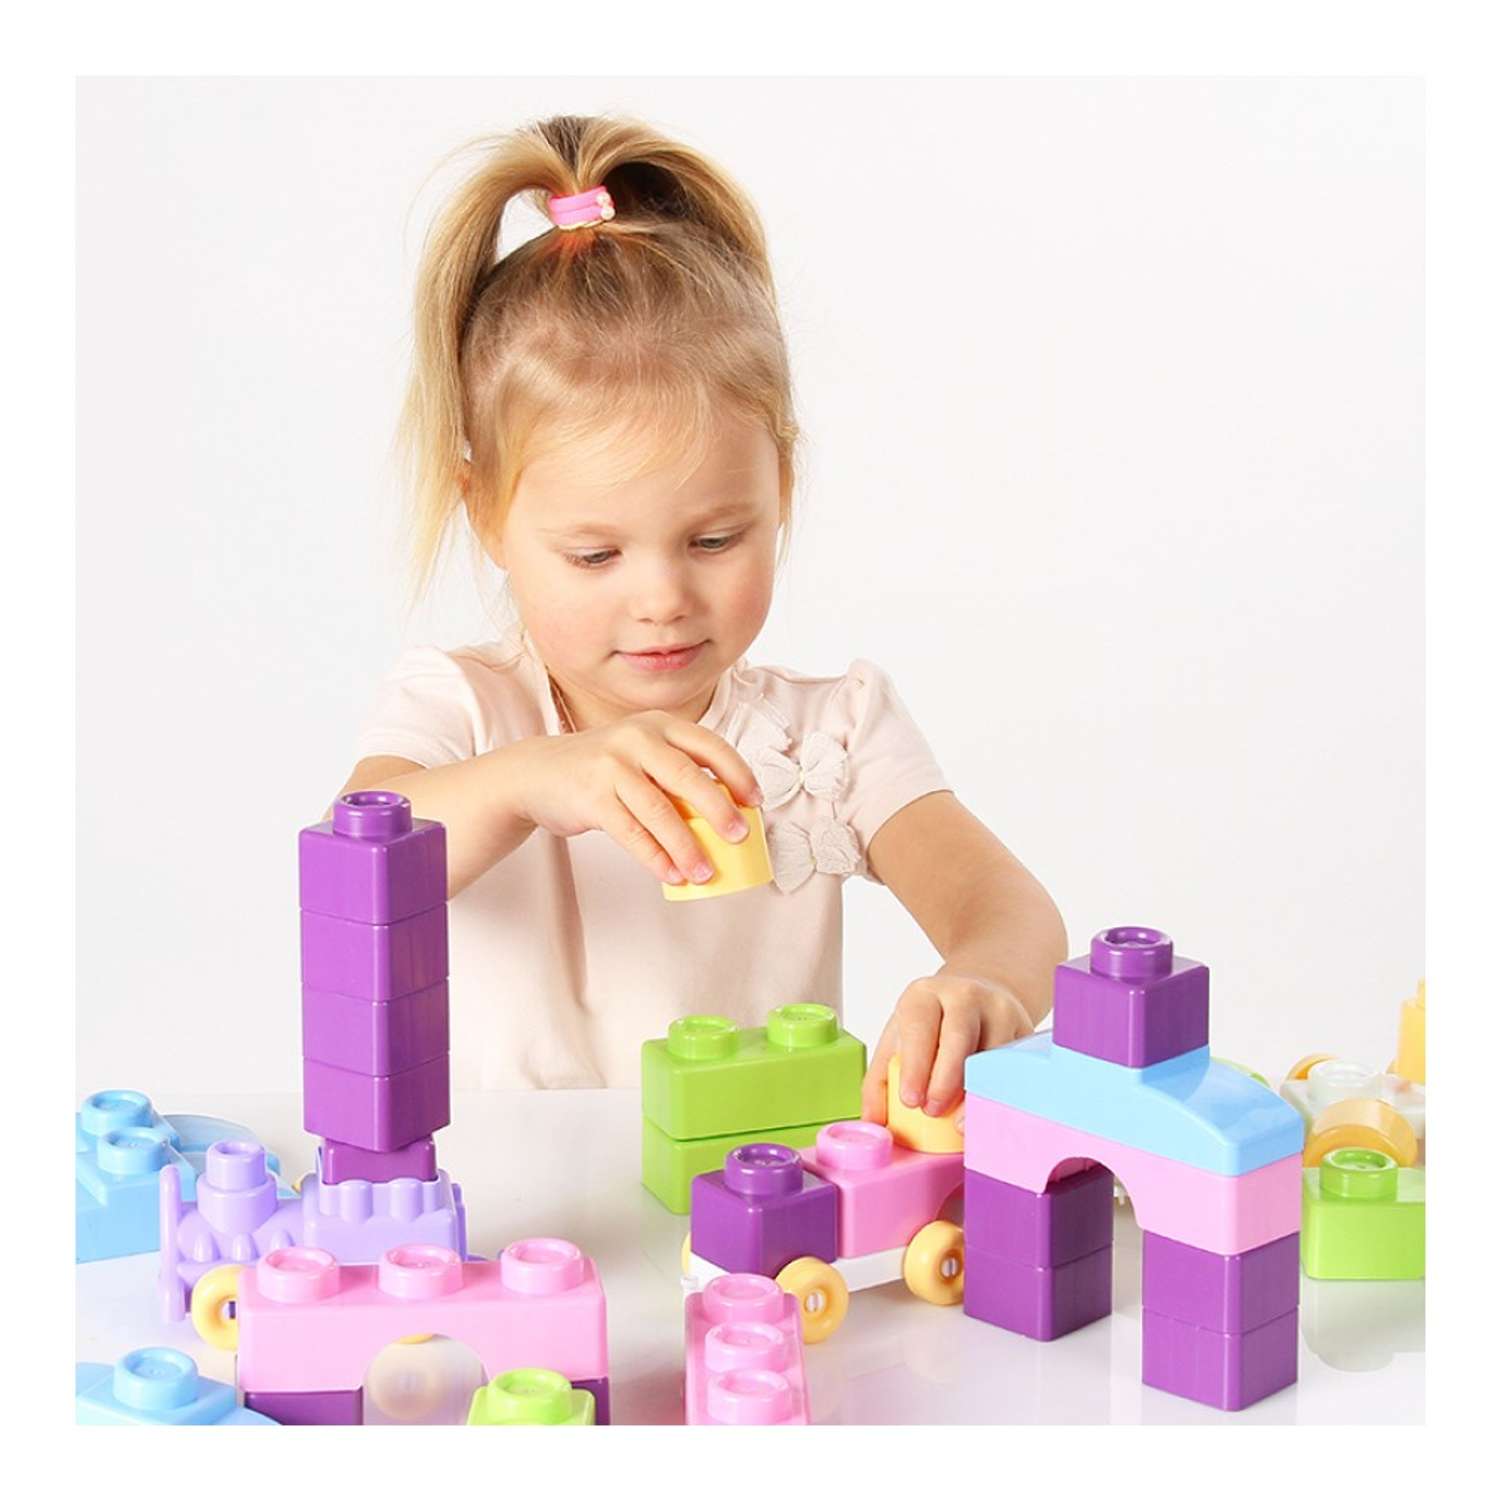 Развивающие игрушки БИПЛАНТ для малышей конструктор Кноп-Кнопыч 61 деталь пастель + Сортер малый + Команда КВА - фото 7